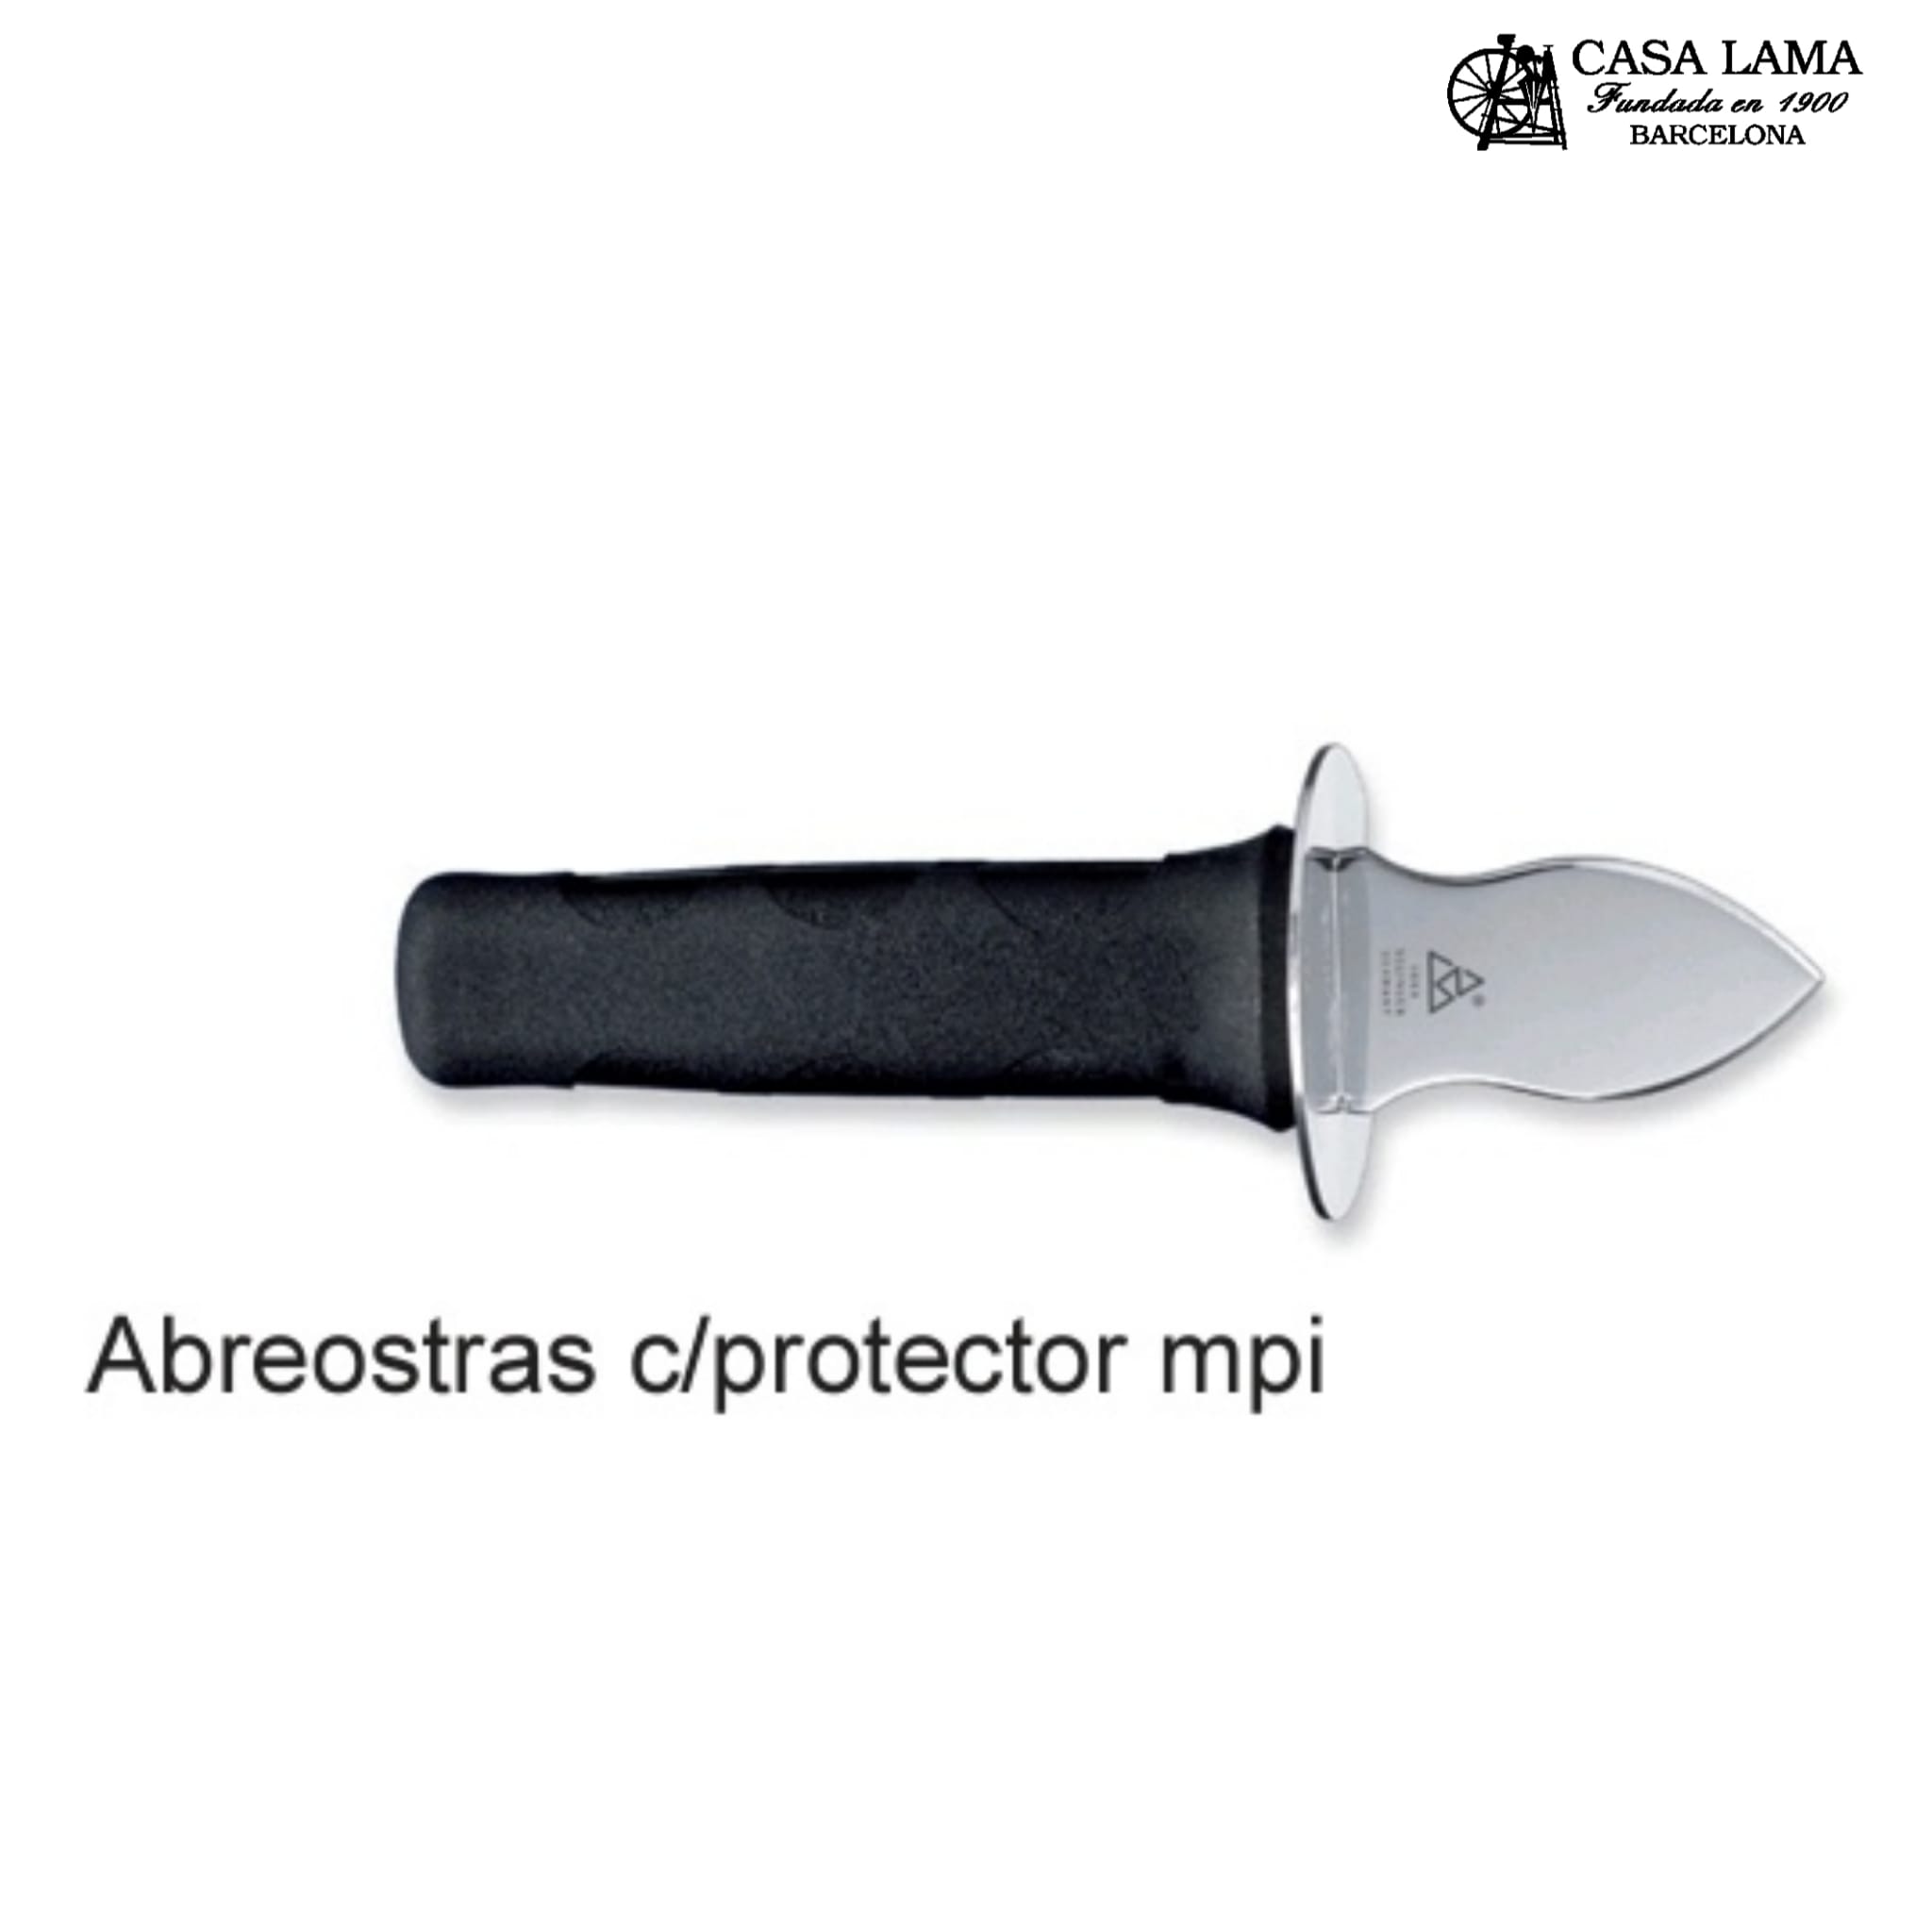 Cuchillo Abreostras - Ostra Nostra